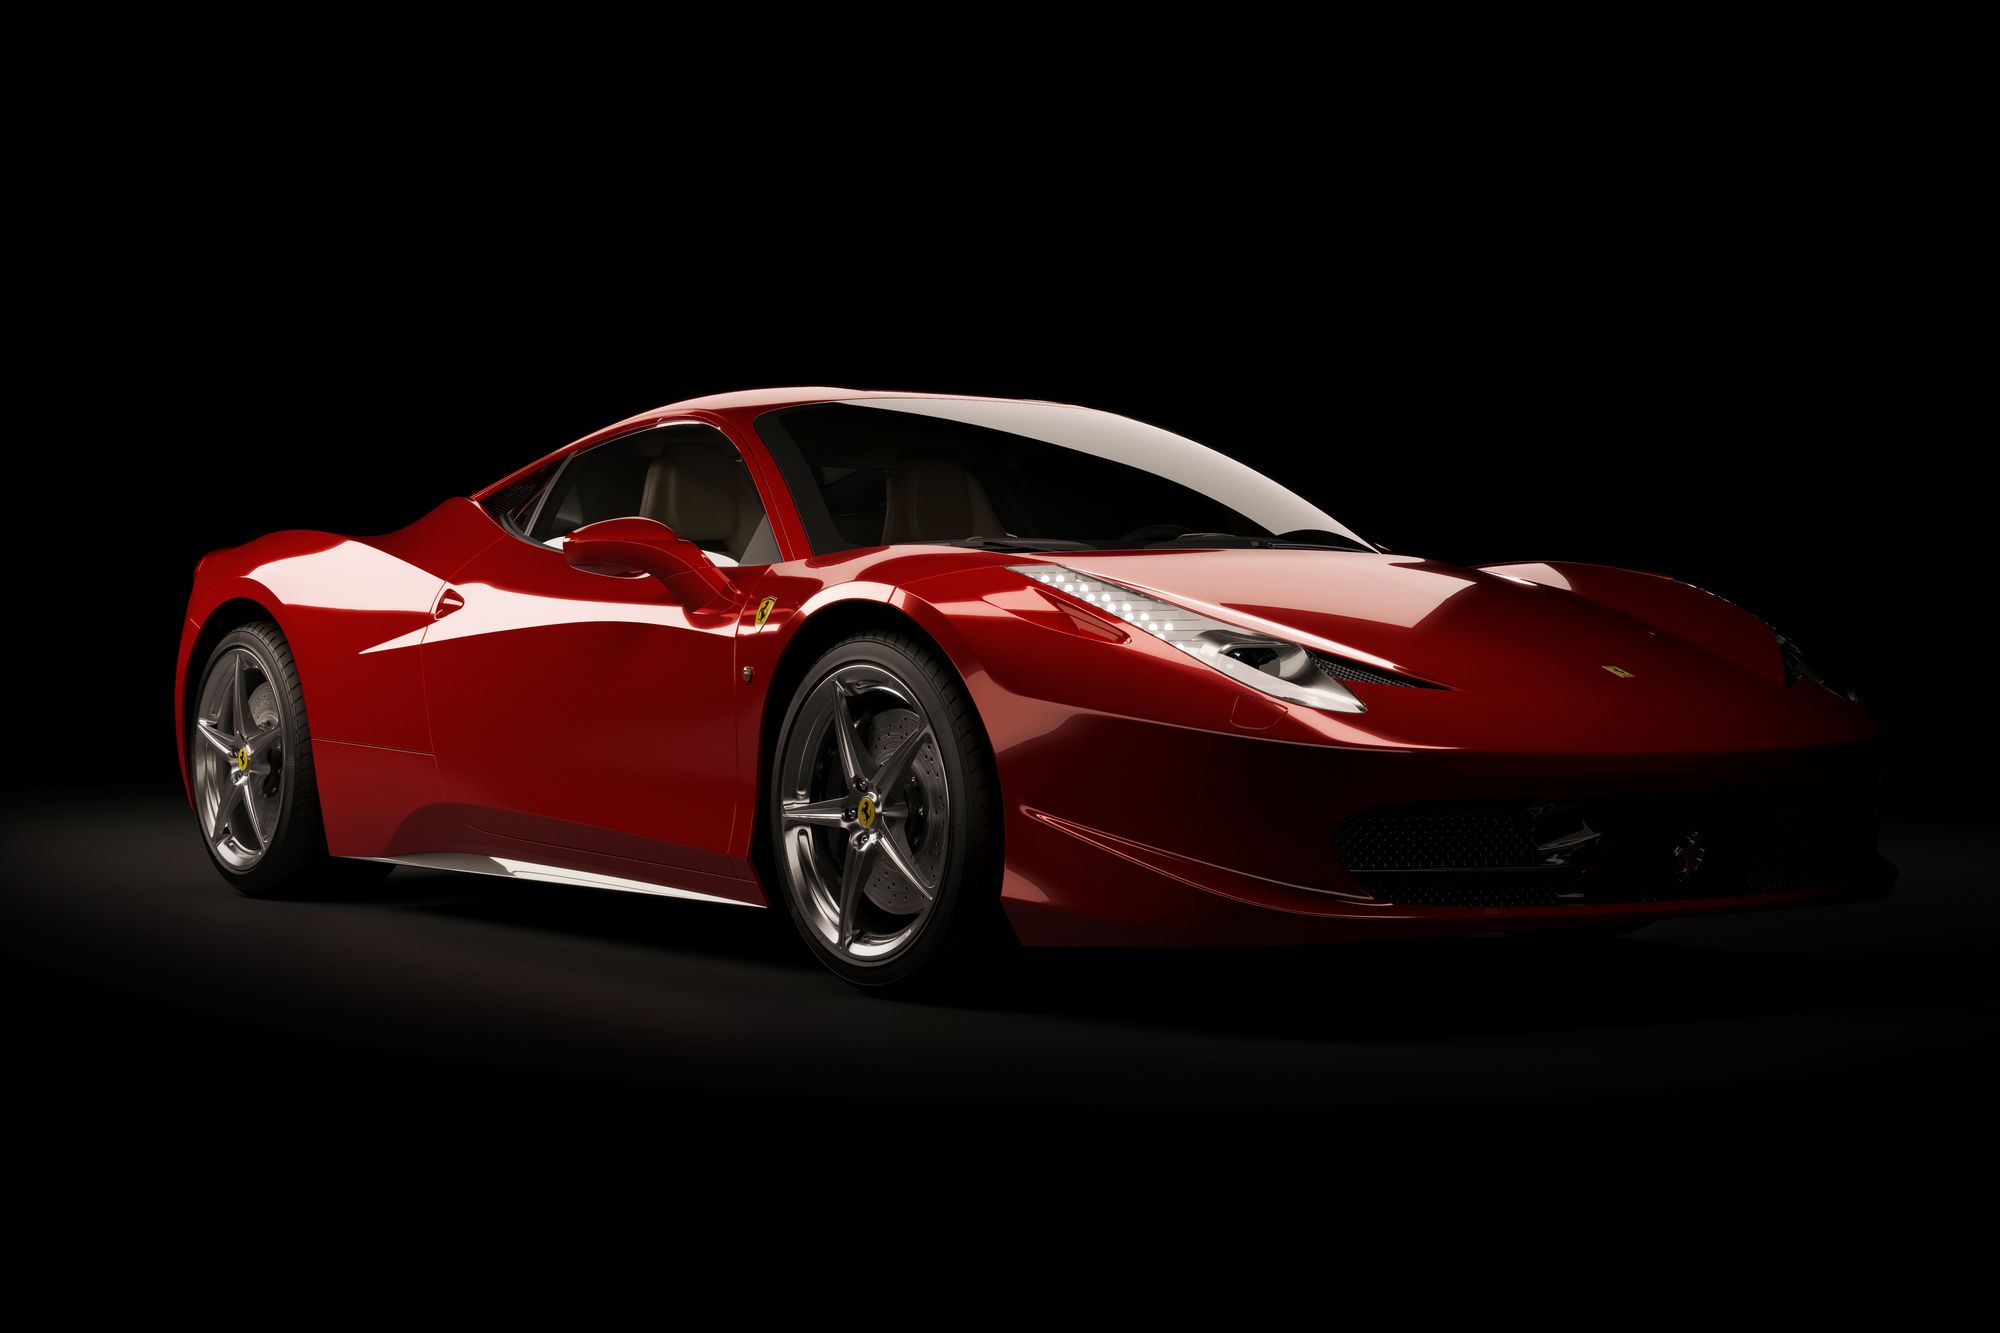 Ferrari vs Lamborghini - Full Carbon